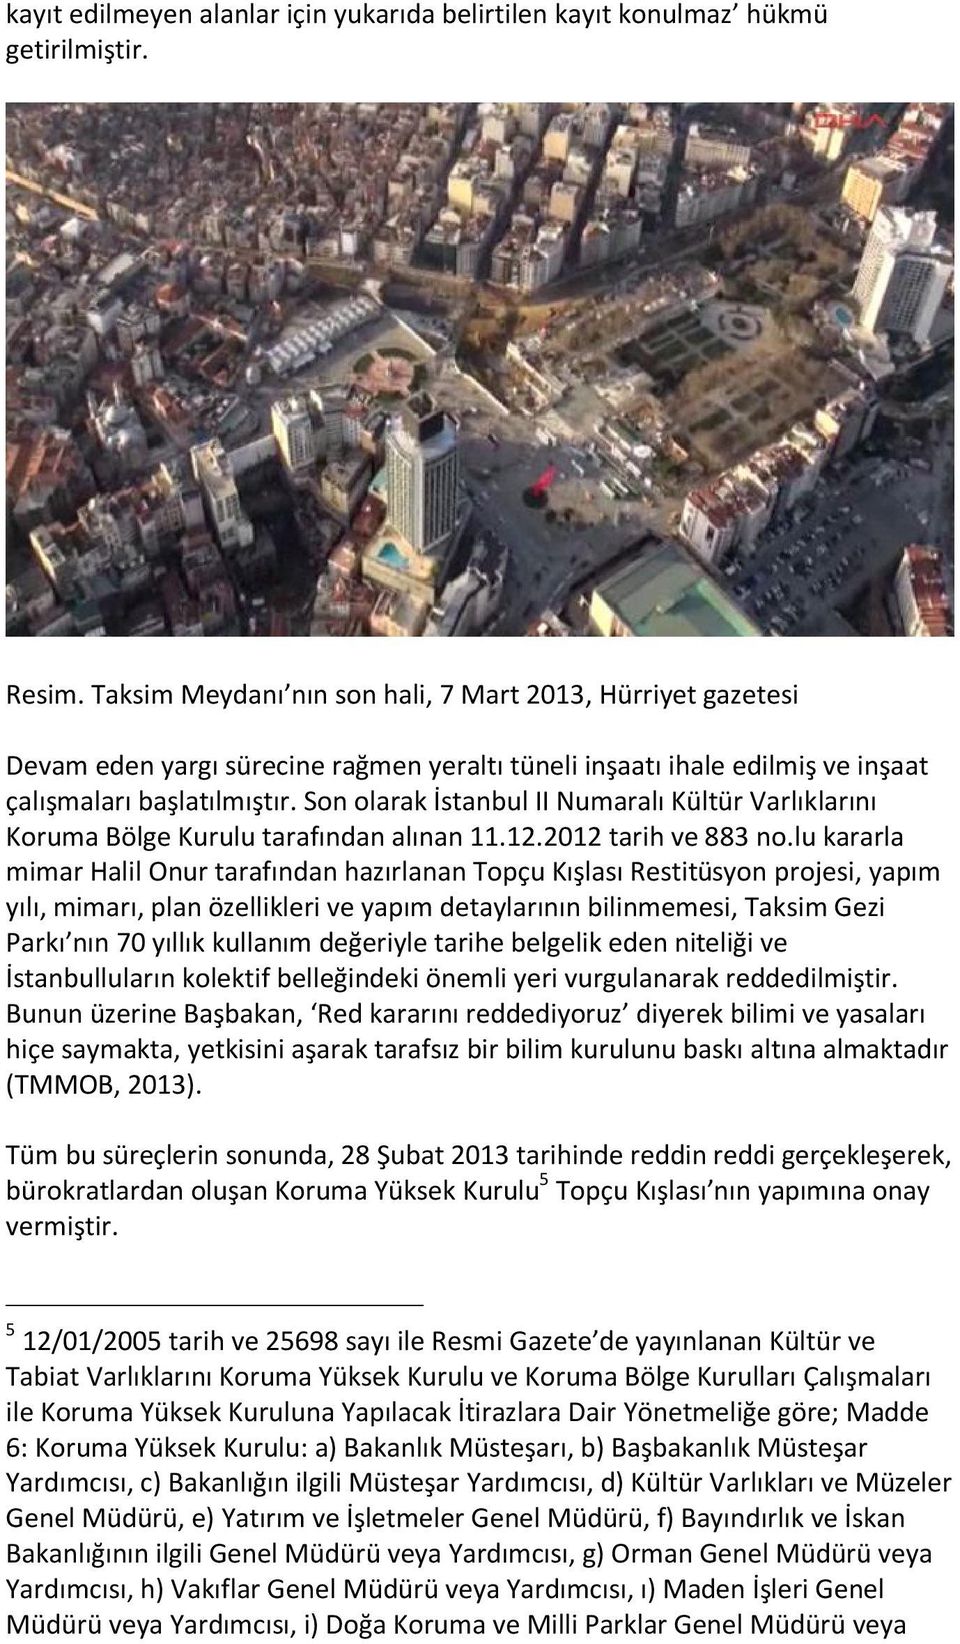 Son olarak İstanbul II Numaralı Kültür Varlıklarını Koruma Bölge Kurulu tarafından alınan 11.12.2012 tarih ve 883 no.